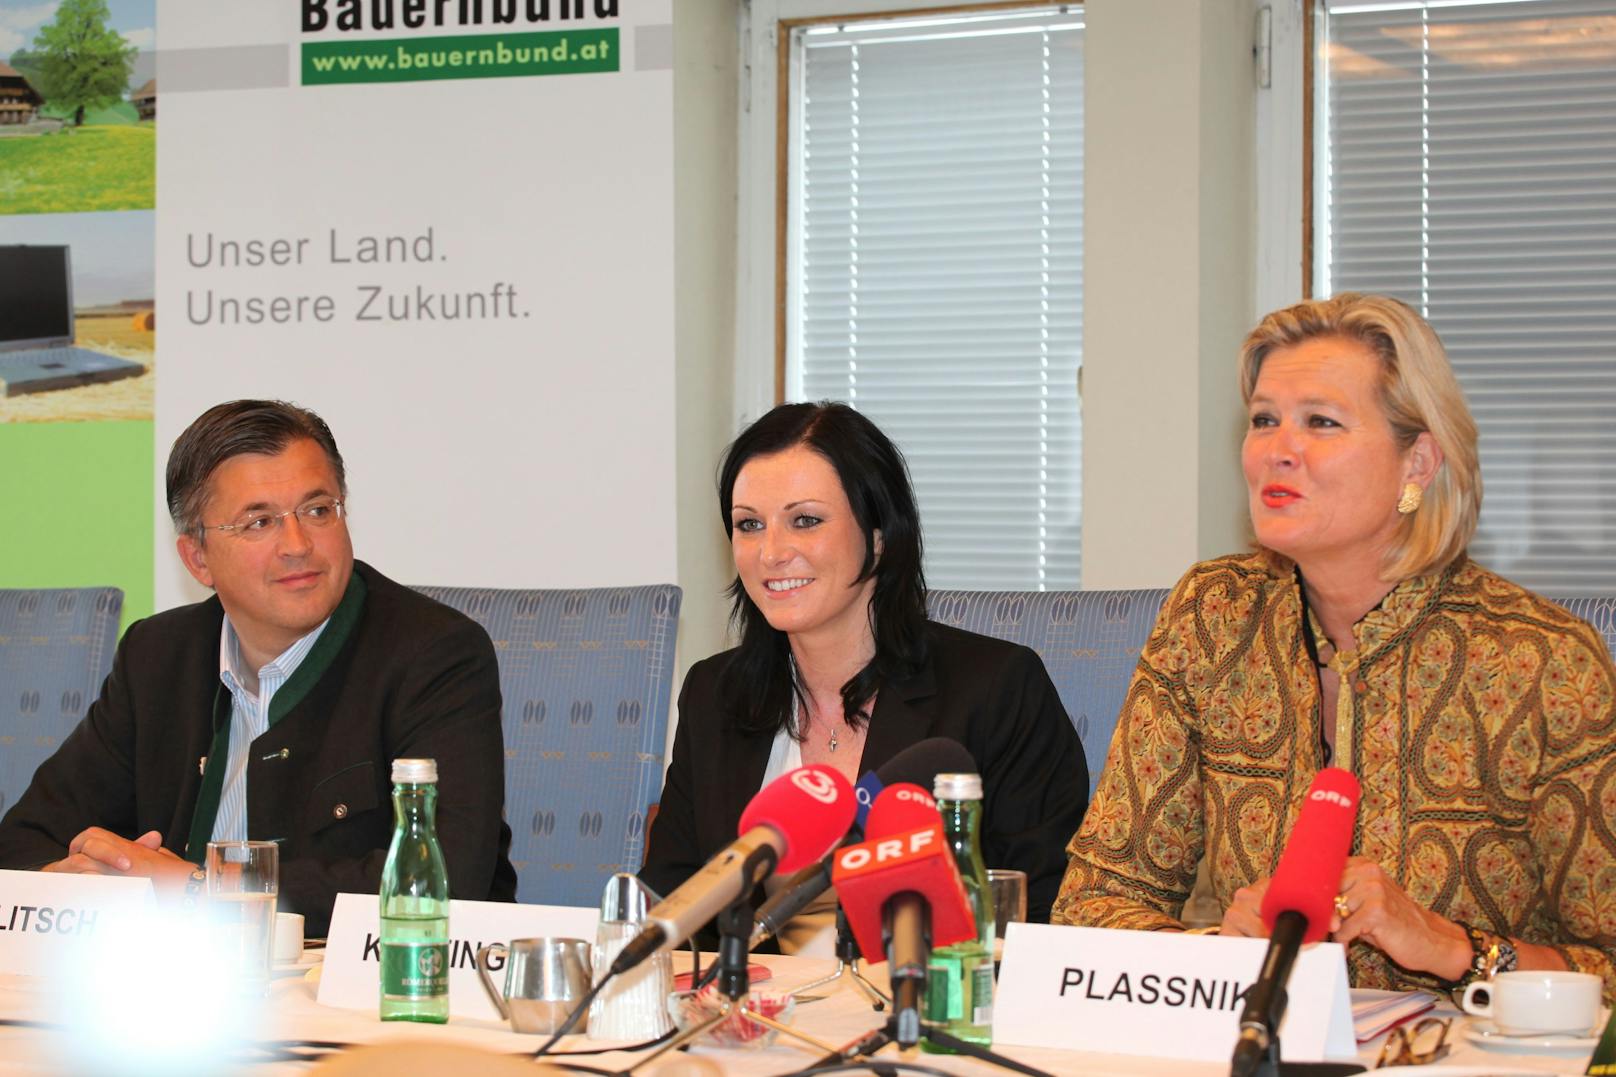 Fritz Grillitsch, Elisabeth Köstinger und Ursula Plassnik im Mai 2009 bei einer Pressekonferenz des Bauernbundes